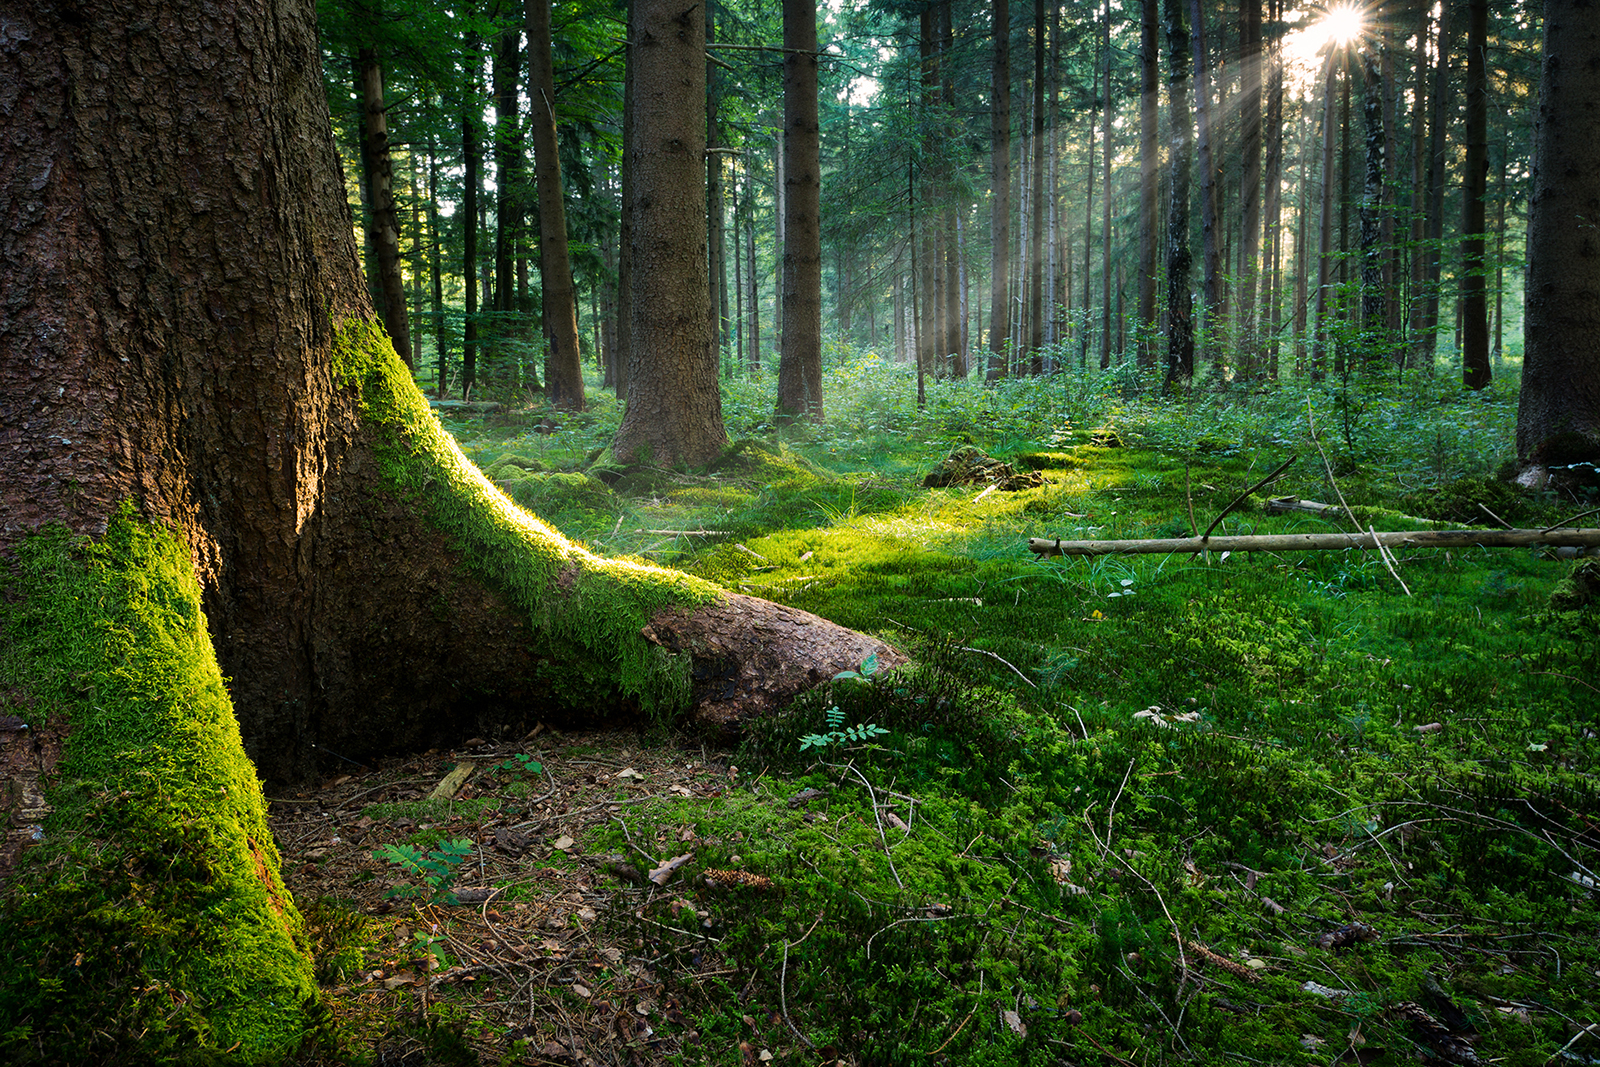 Post precedente: ERA/NET SUMFOREST: Foreste Sostenibili per la Società del Futuro